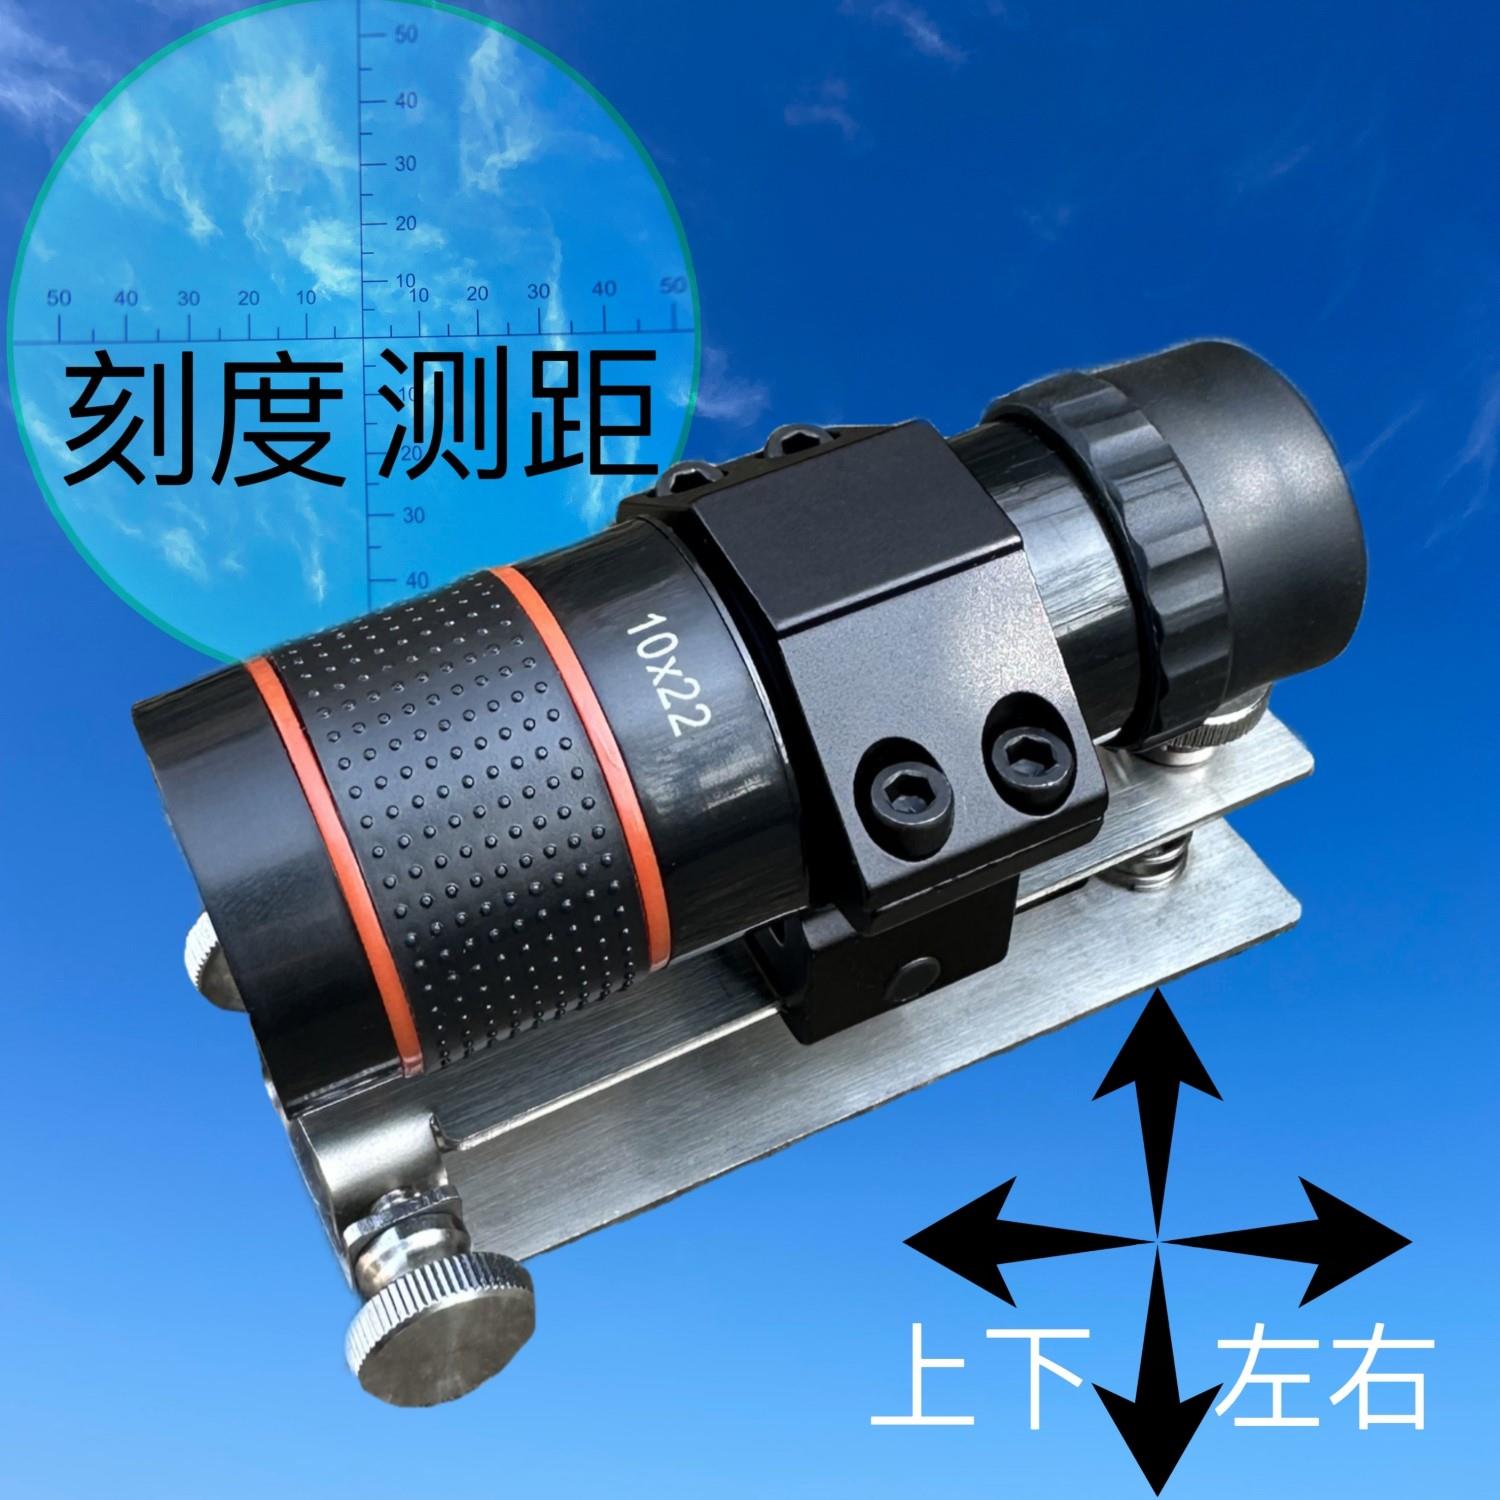 十字刻度坐标单筒望远镜10倍镜可调节底座高清高倍测距准心猫头鹰